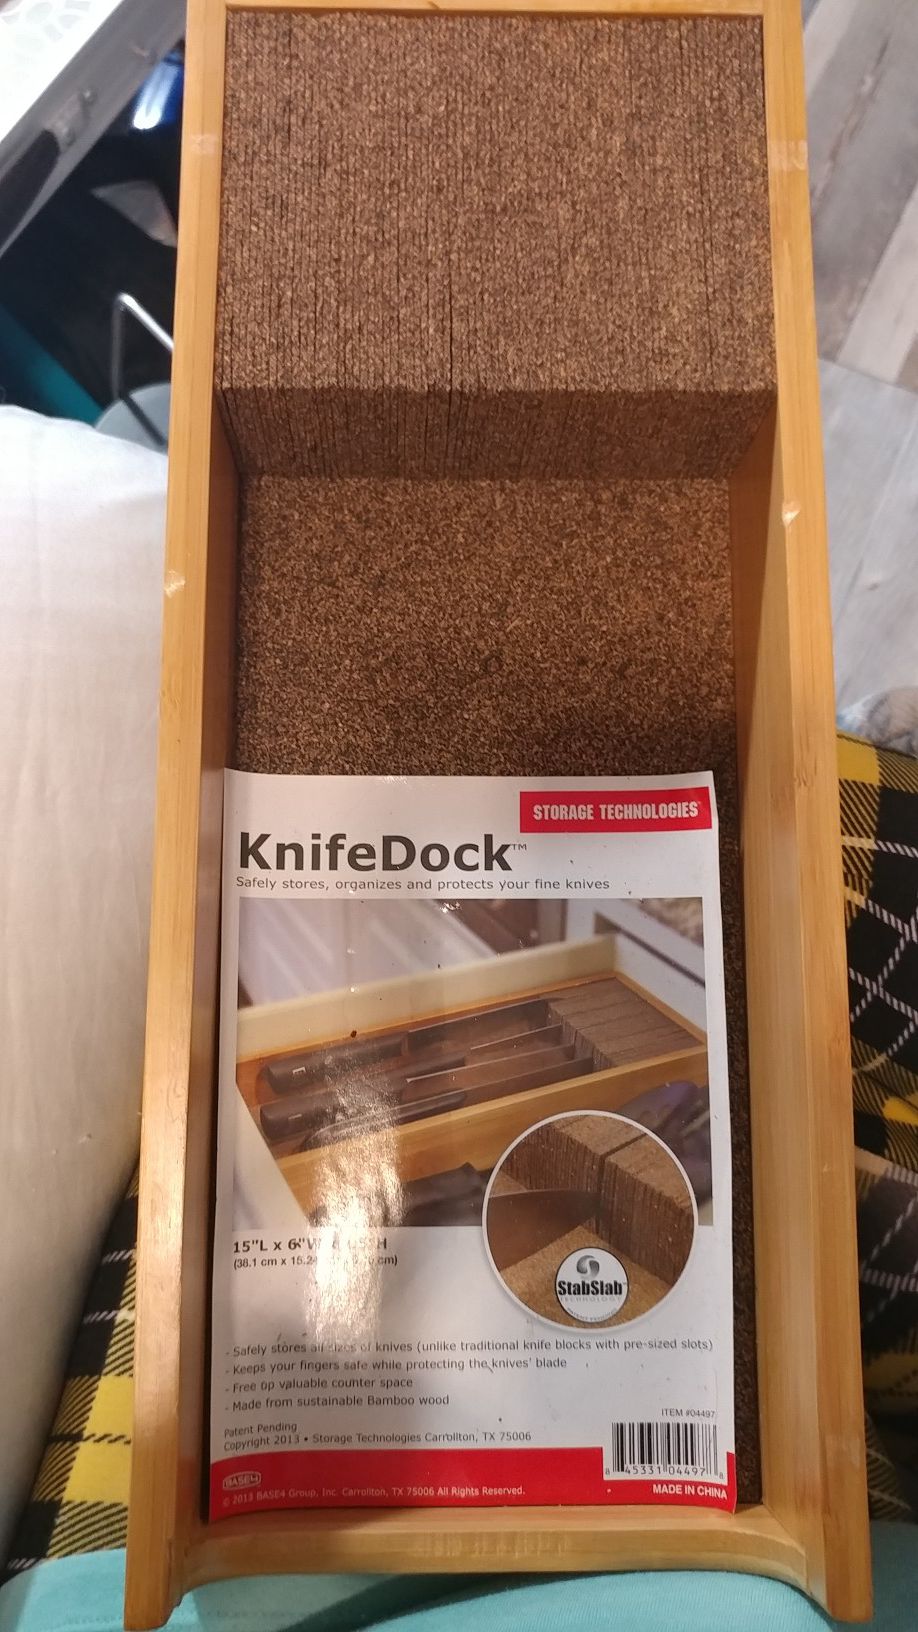 Knife dock brand new